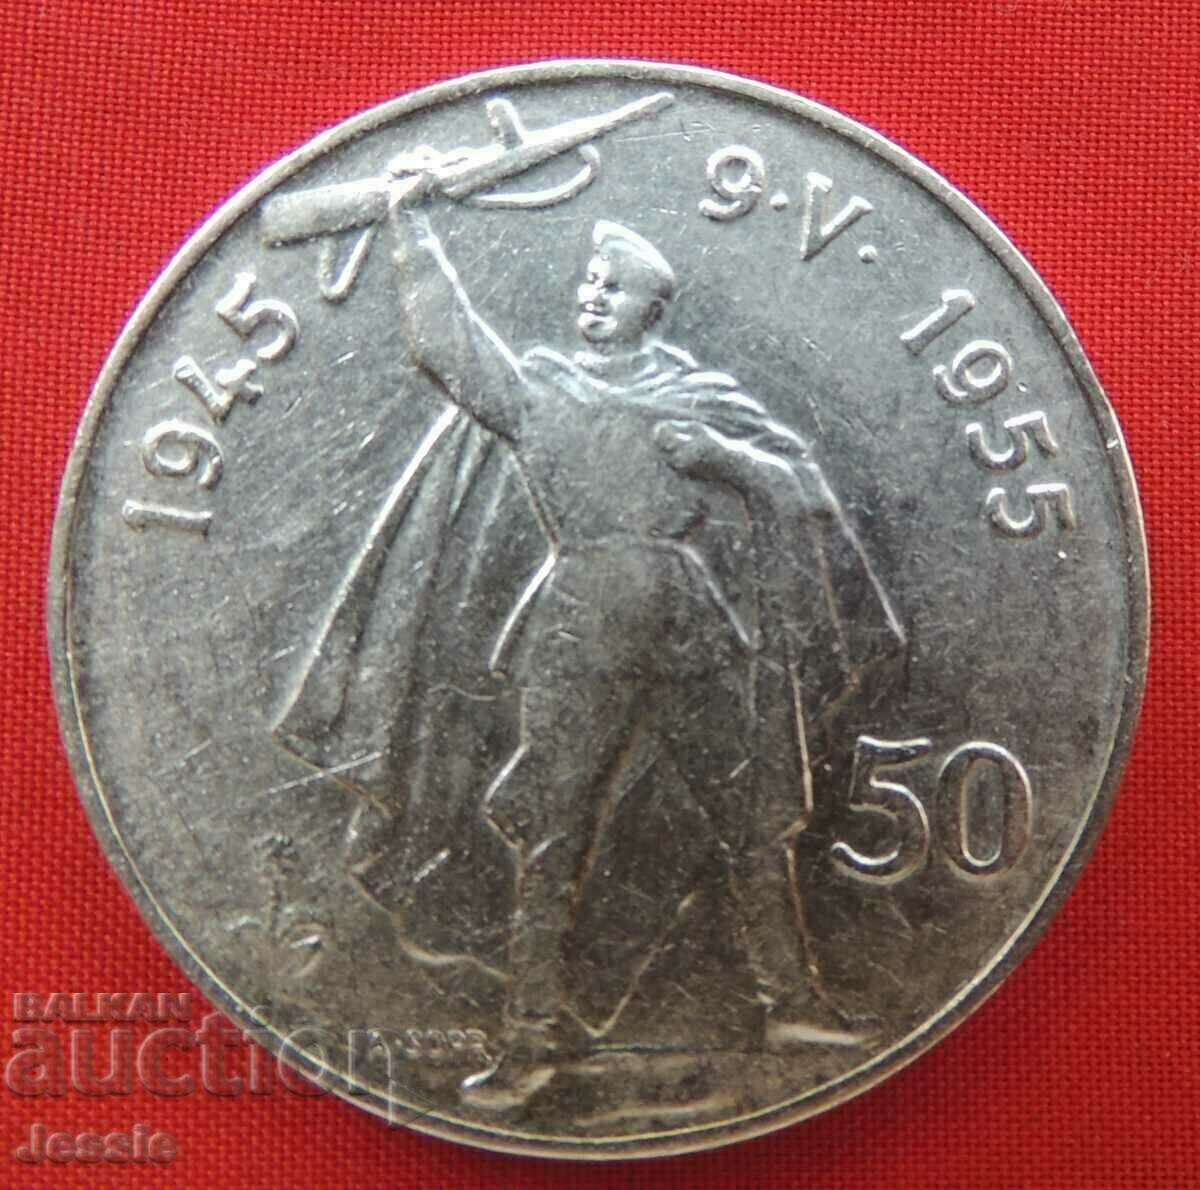 50 Koruna 1945 - 1955 Czechoslovakia (10 years of liberation)